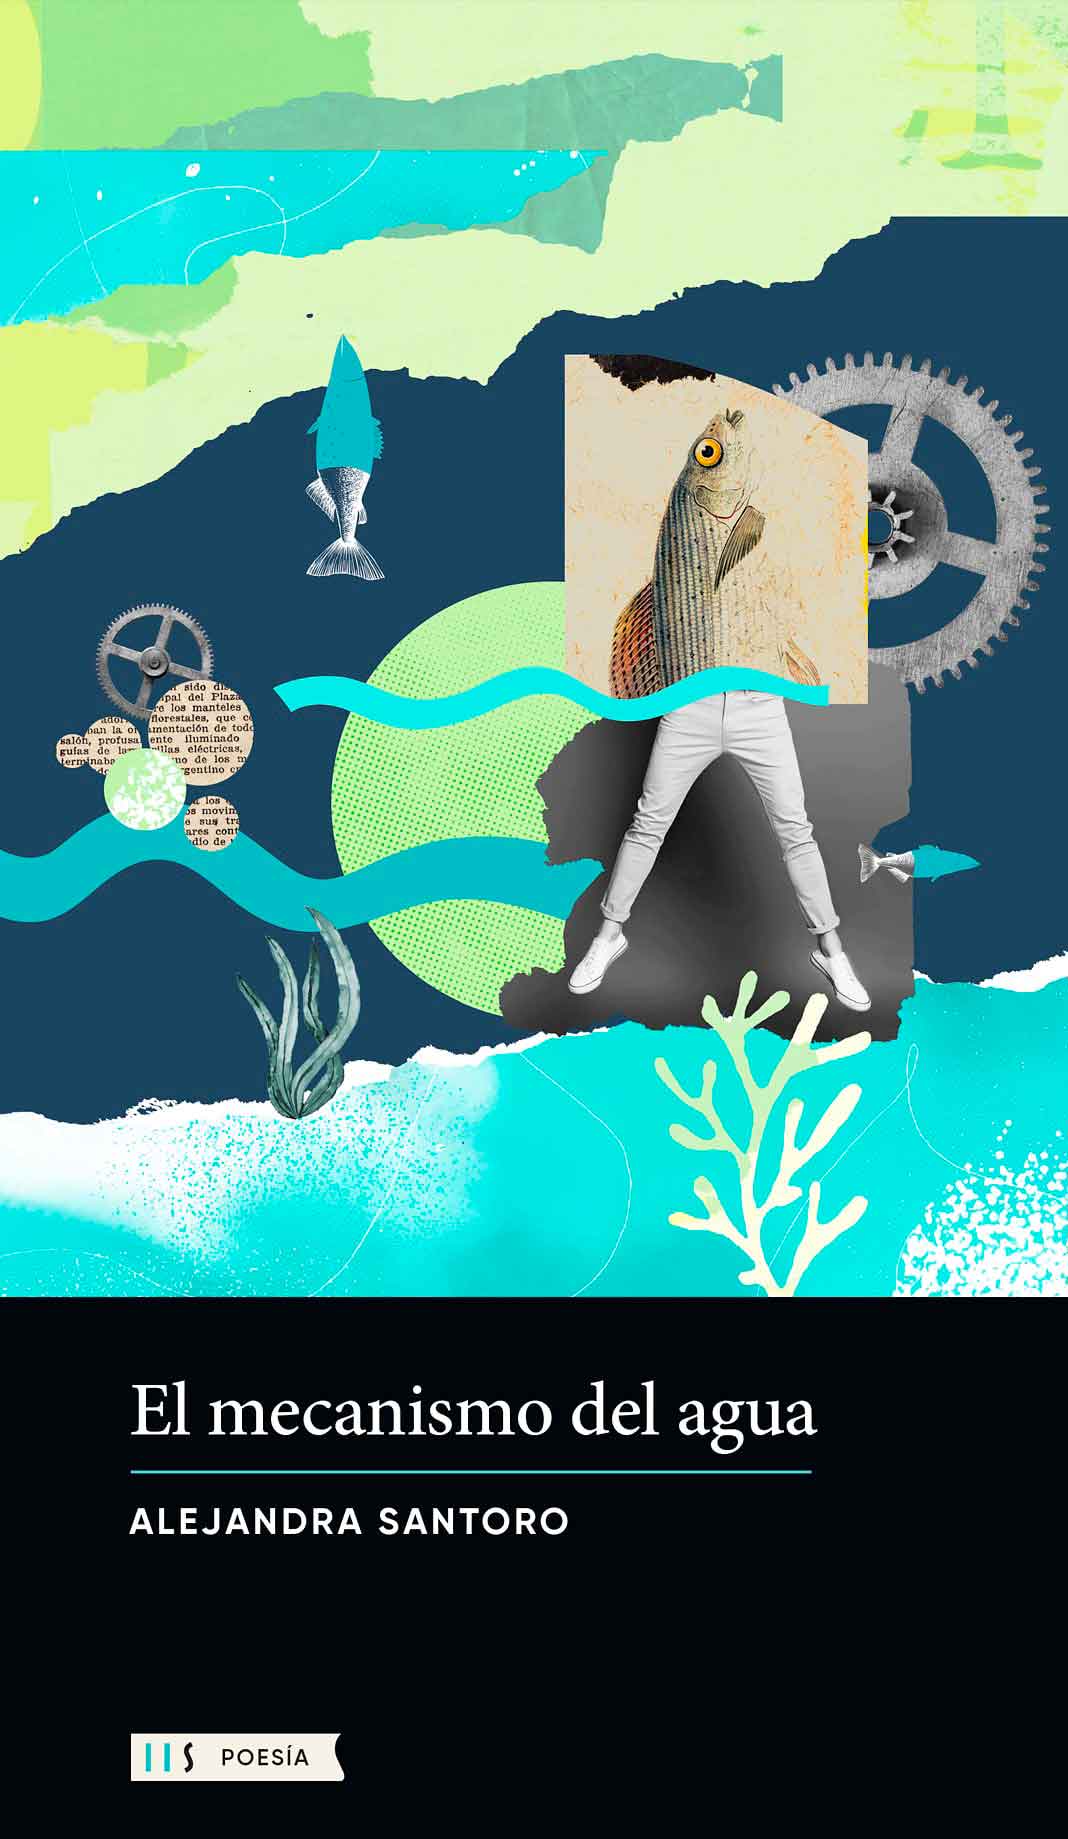 Tapa de "El mecanismo del agua", libro de Alejandra Santoro